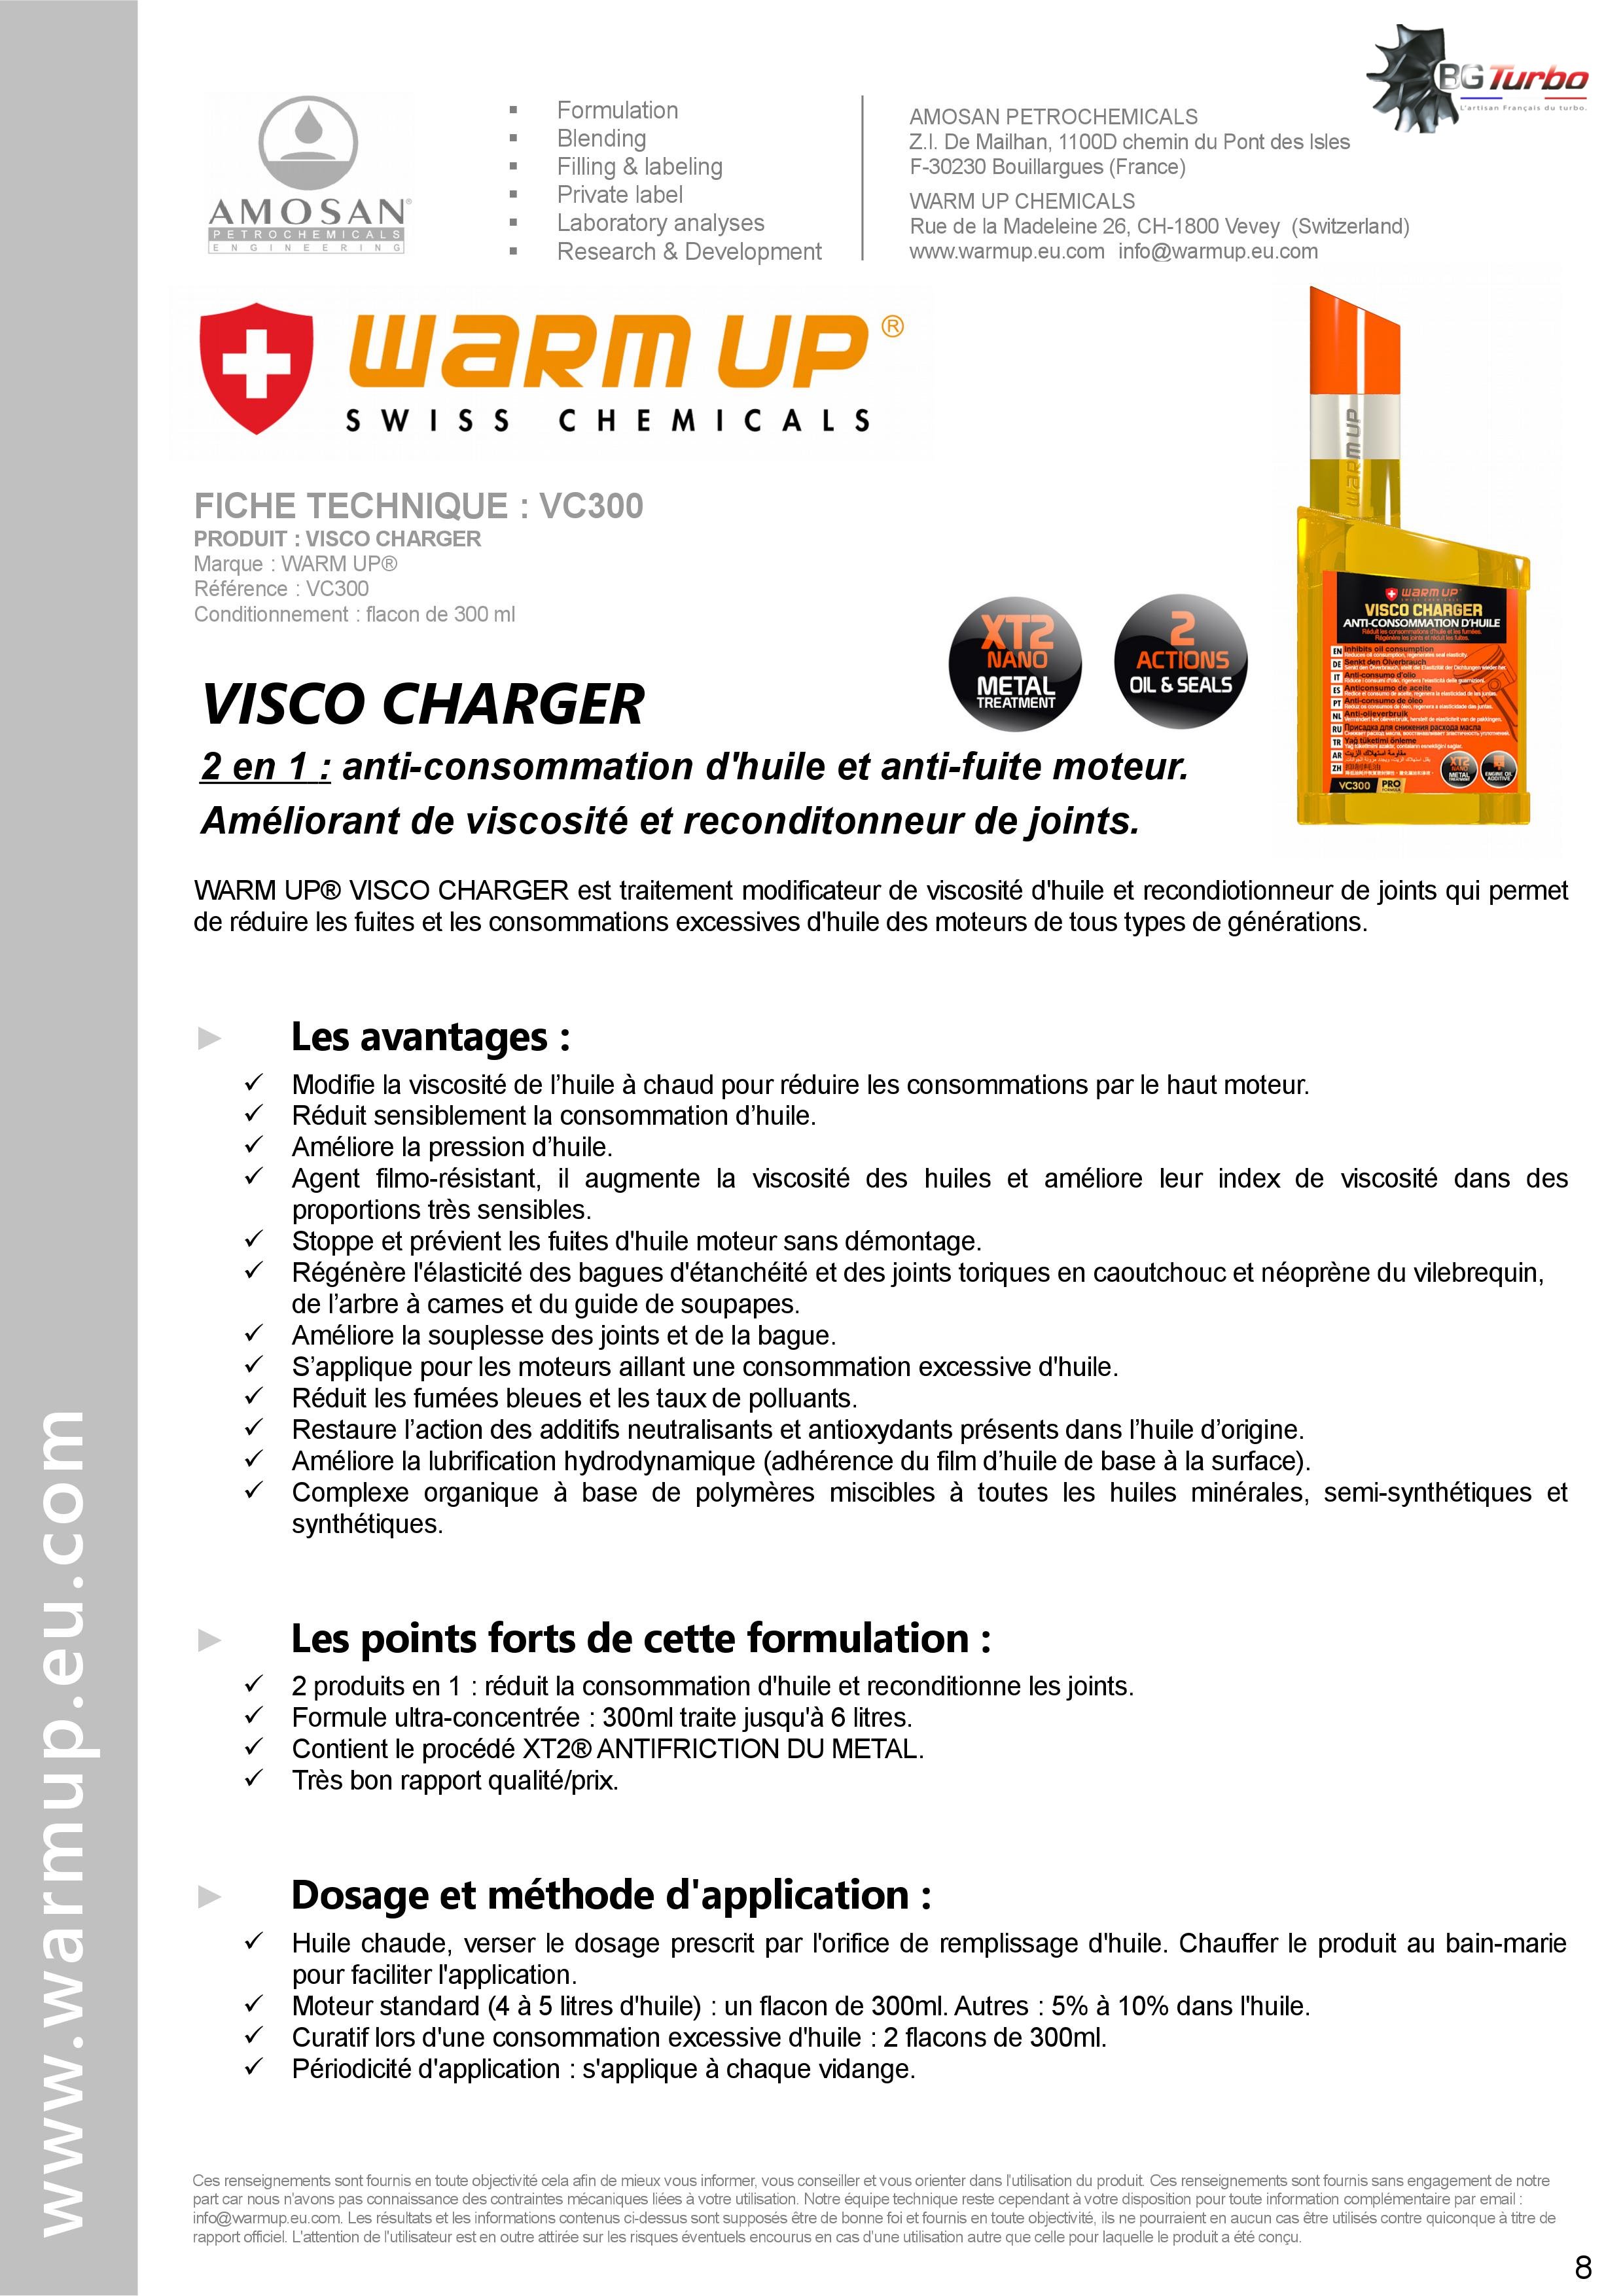 WARM UP Améliorant de viscosité d'huile moteur, antifriction et reconditionneur de joints - par AMOSAN WARMUP
